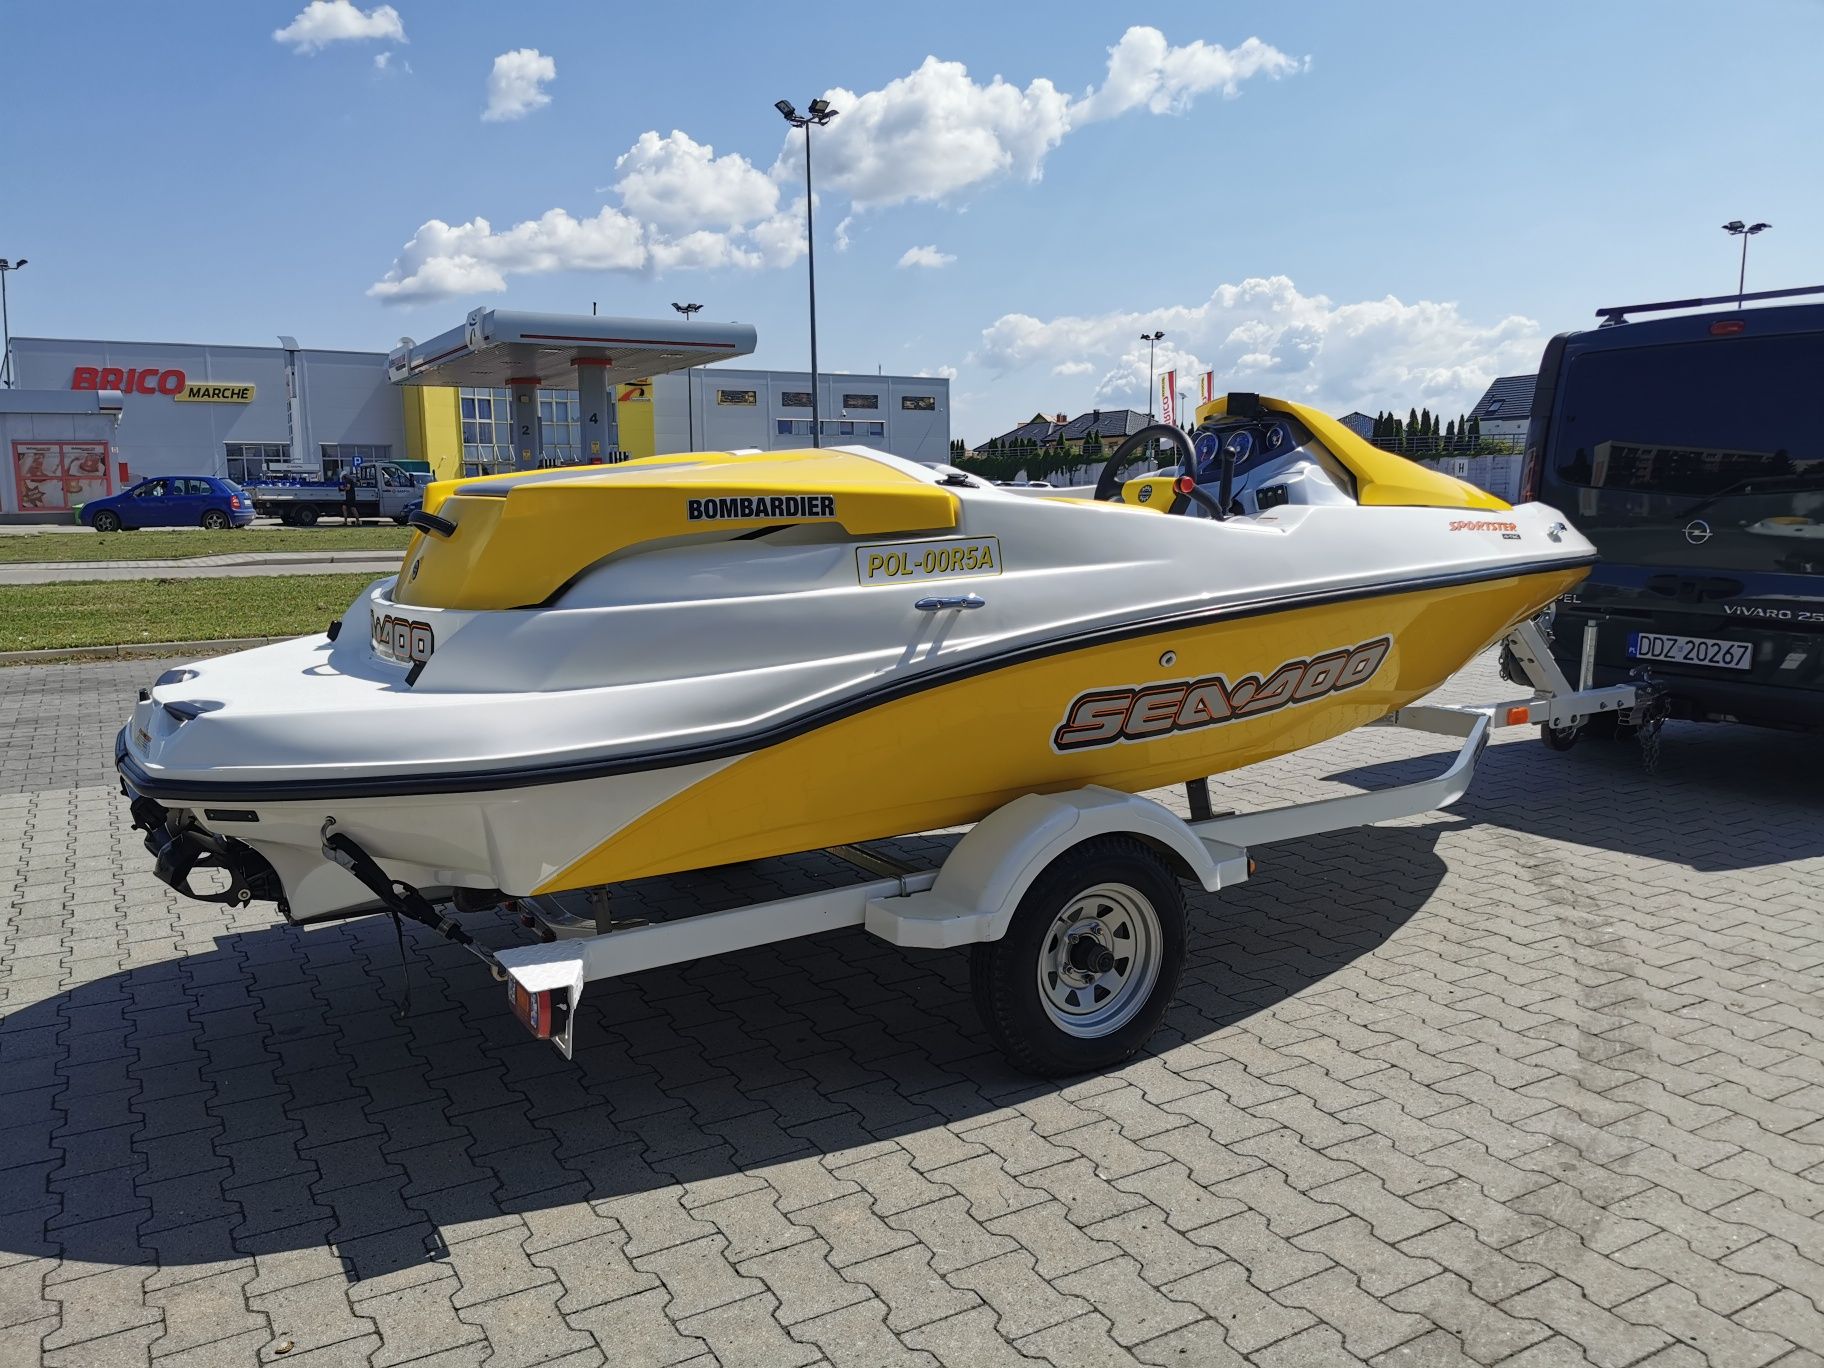 Seadoo Sea Doo Sportster 150  sprzedam zamienię Łódź motorowa  motorów